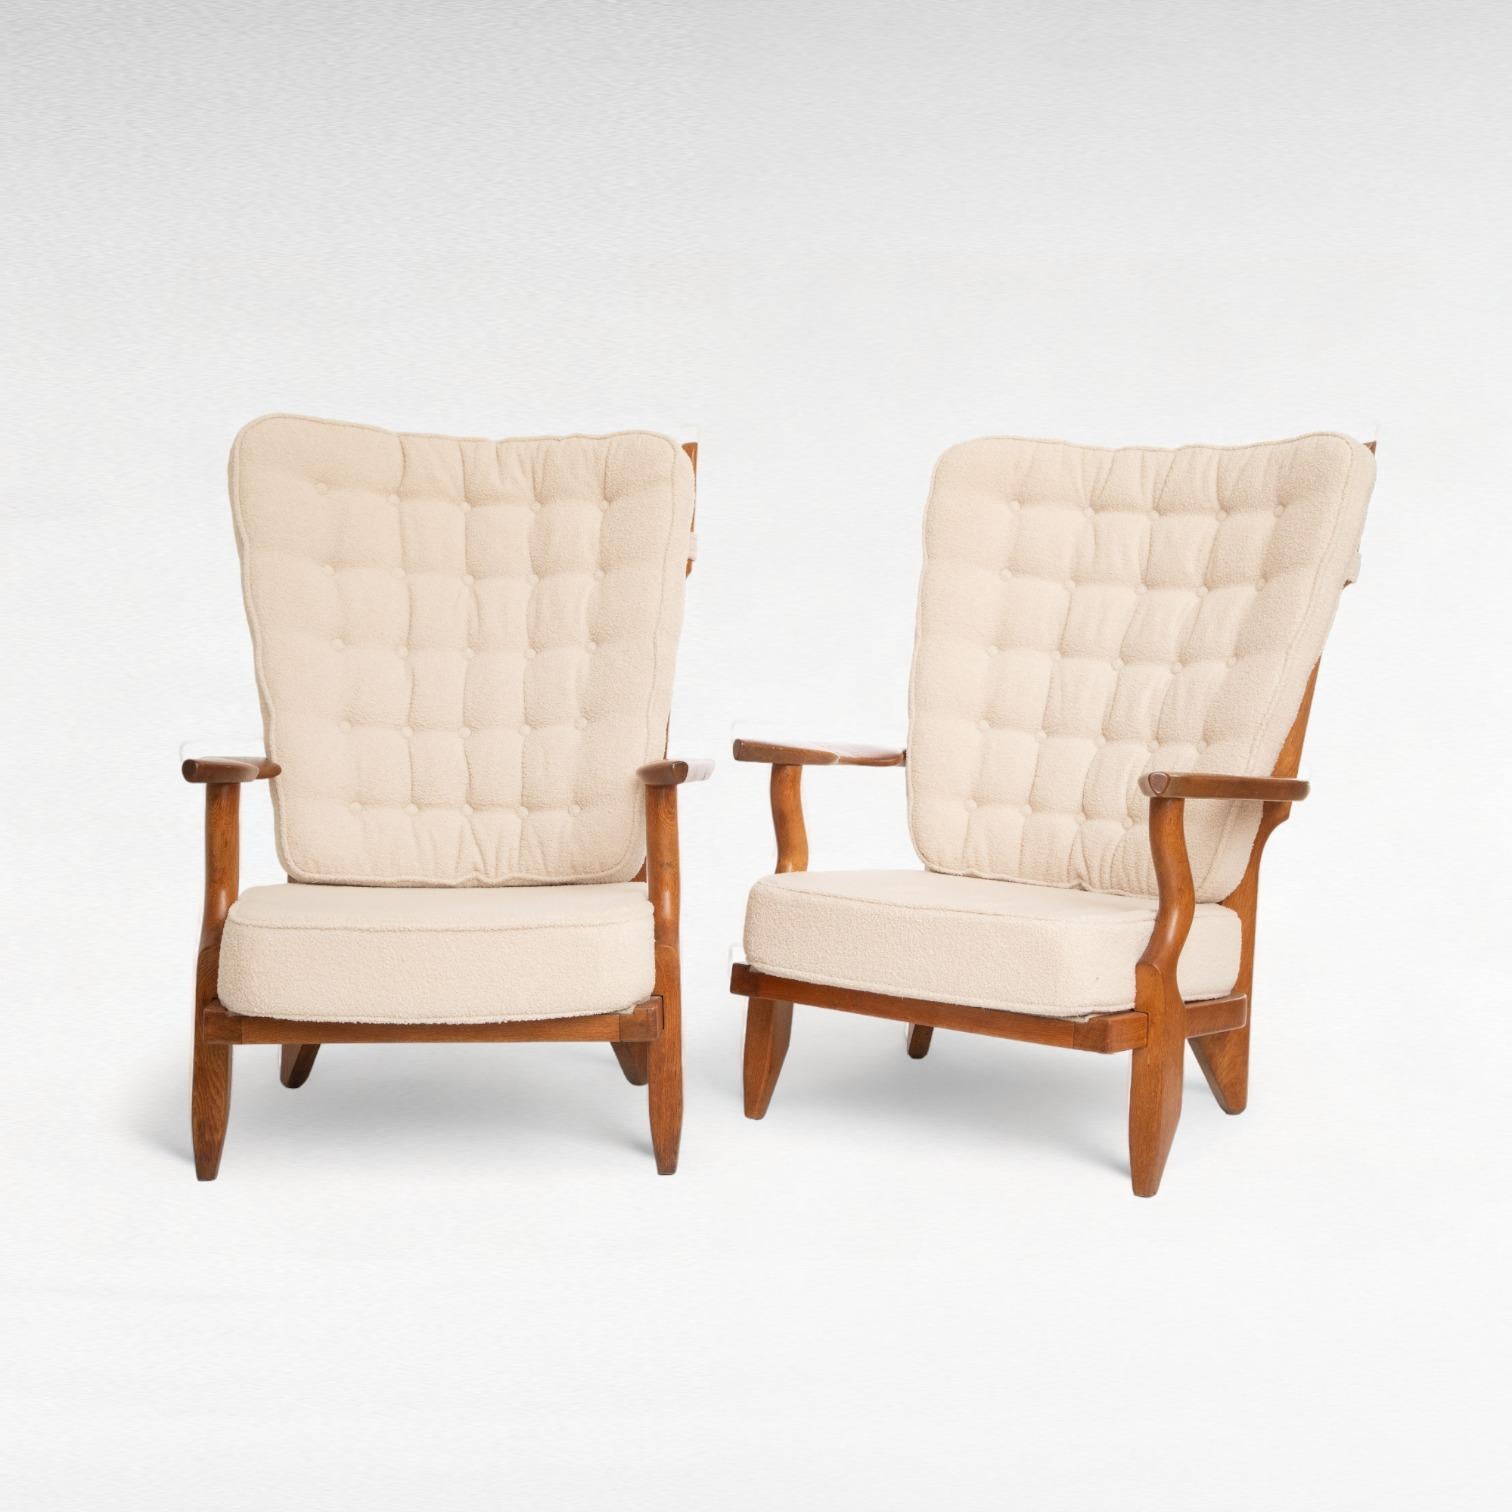 Paire de chaises longues en chêne de style moderne du milieu du siècle dernier 
 par Guillerme et Chambron, 
France 1950
Modèle Grand Repos
Forme organique sculpturale, dos en forme de doigt 
Conserve une belle patine chaude
Ces chaises sont